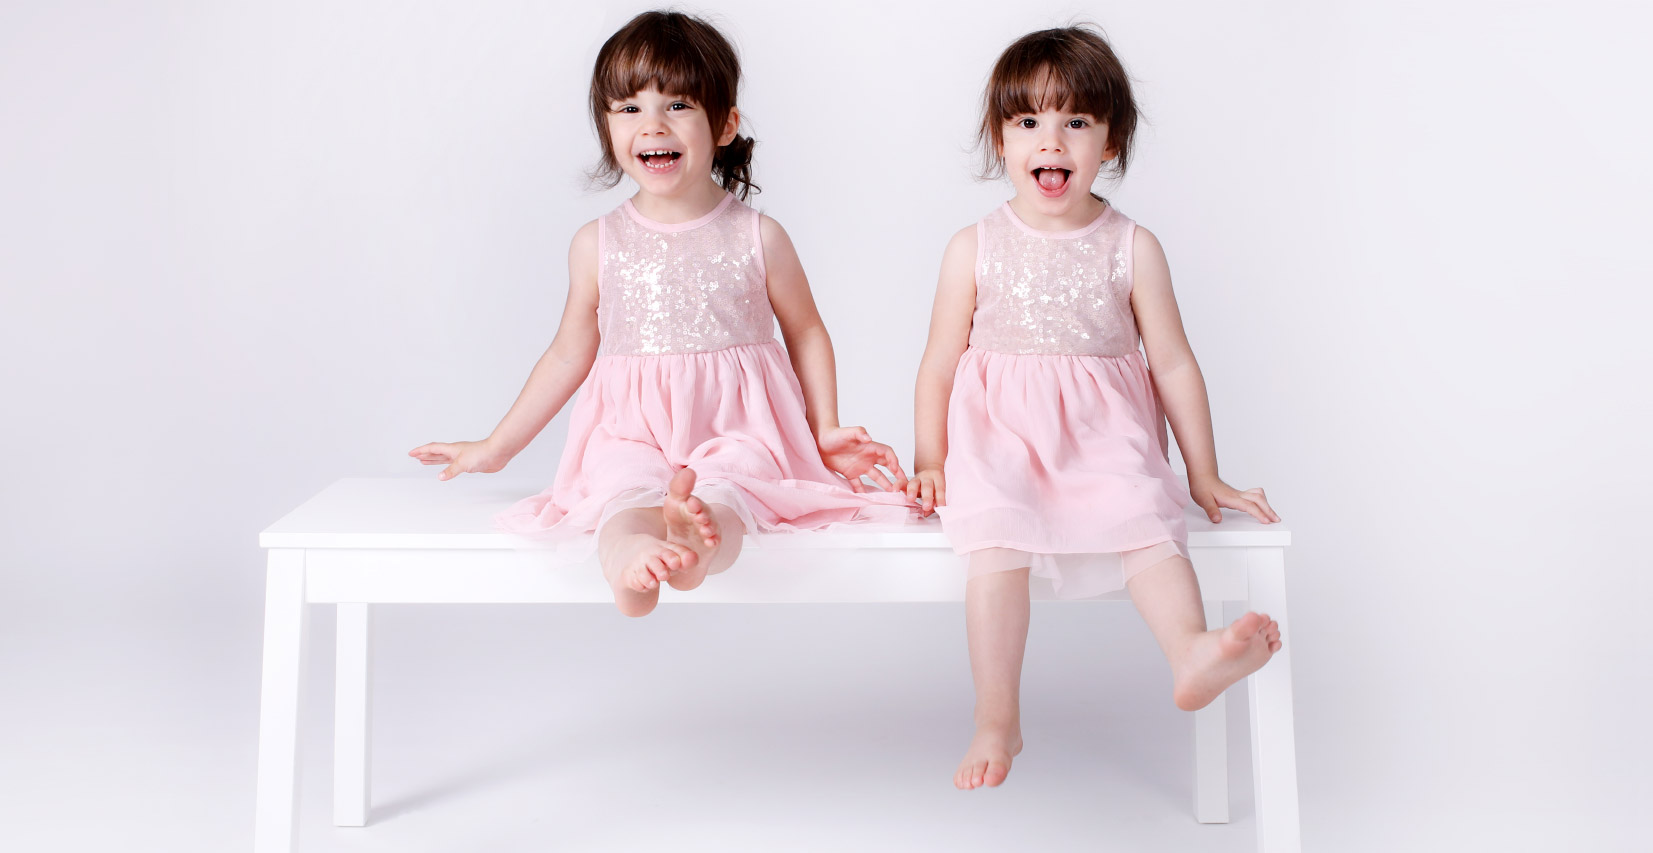 Deux petites filles jumelles souriantes en robe rose, assises sur un banc blanc dans un studio photo